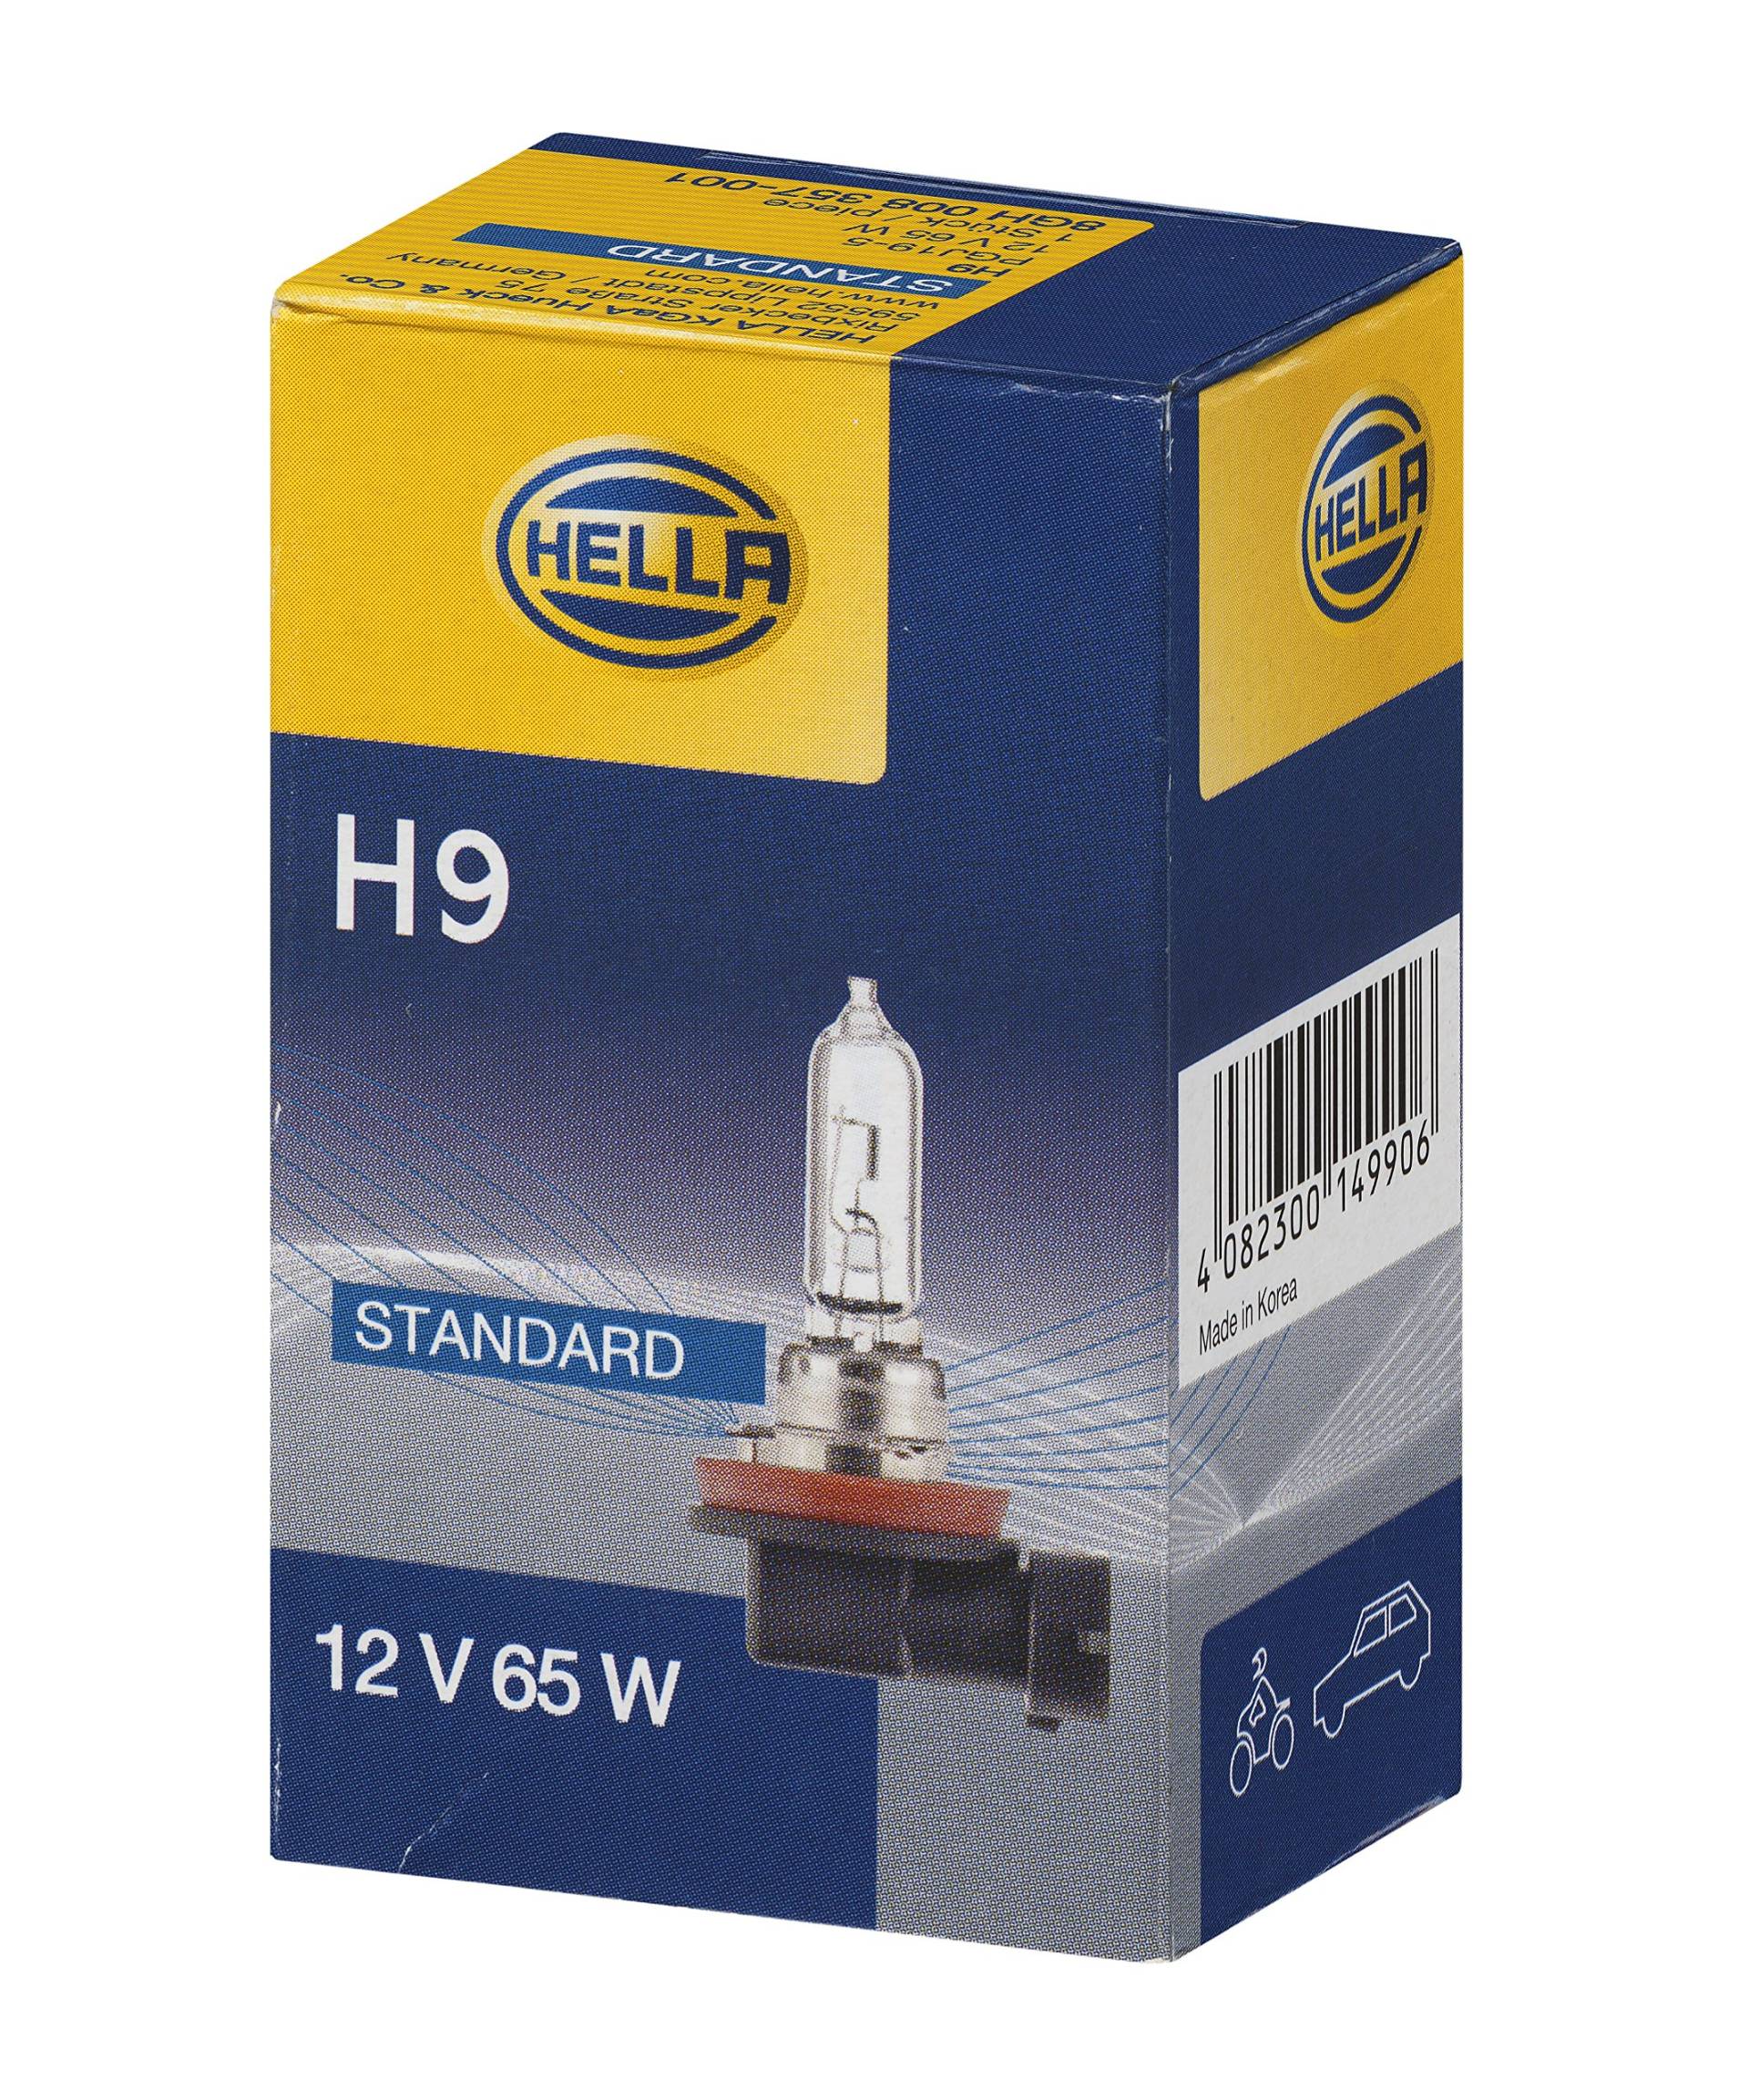 HELLA - Glühlampe - H9 - Standard - 12V - 65W - Sockelausführung: PGJ19-5 - Schachtel - Menge: 1 - 8GH 008 357-001 von Hella